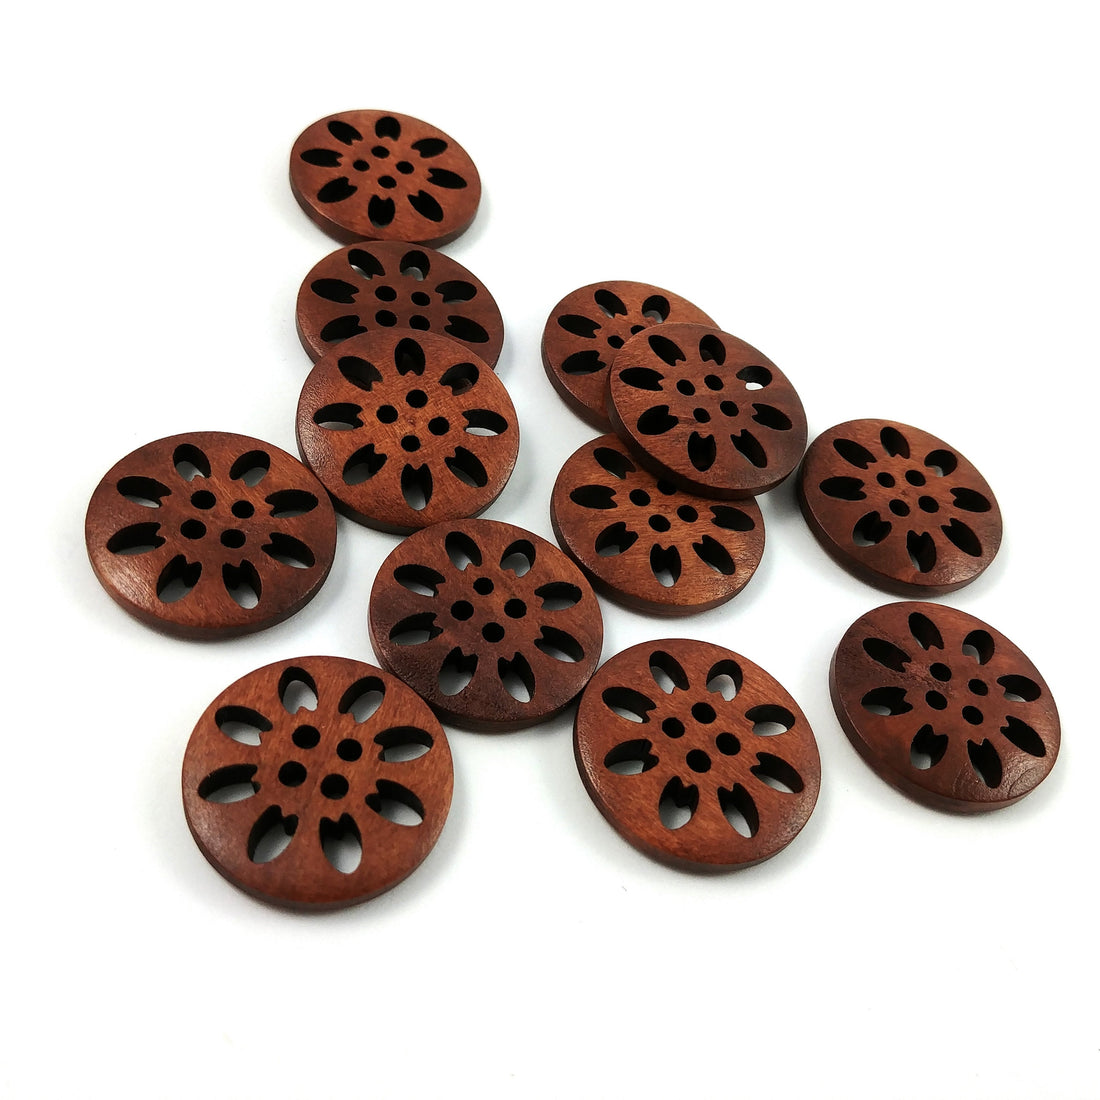 6 boutons de bois fleur dentelle 25mm